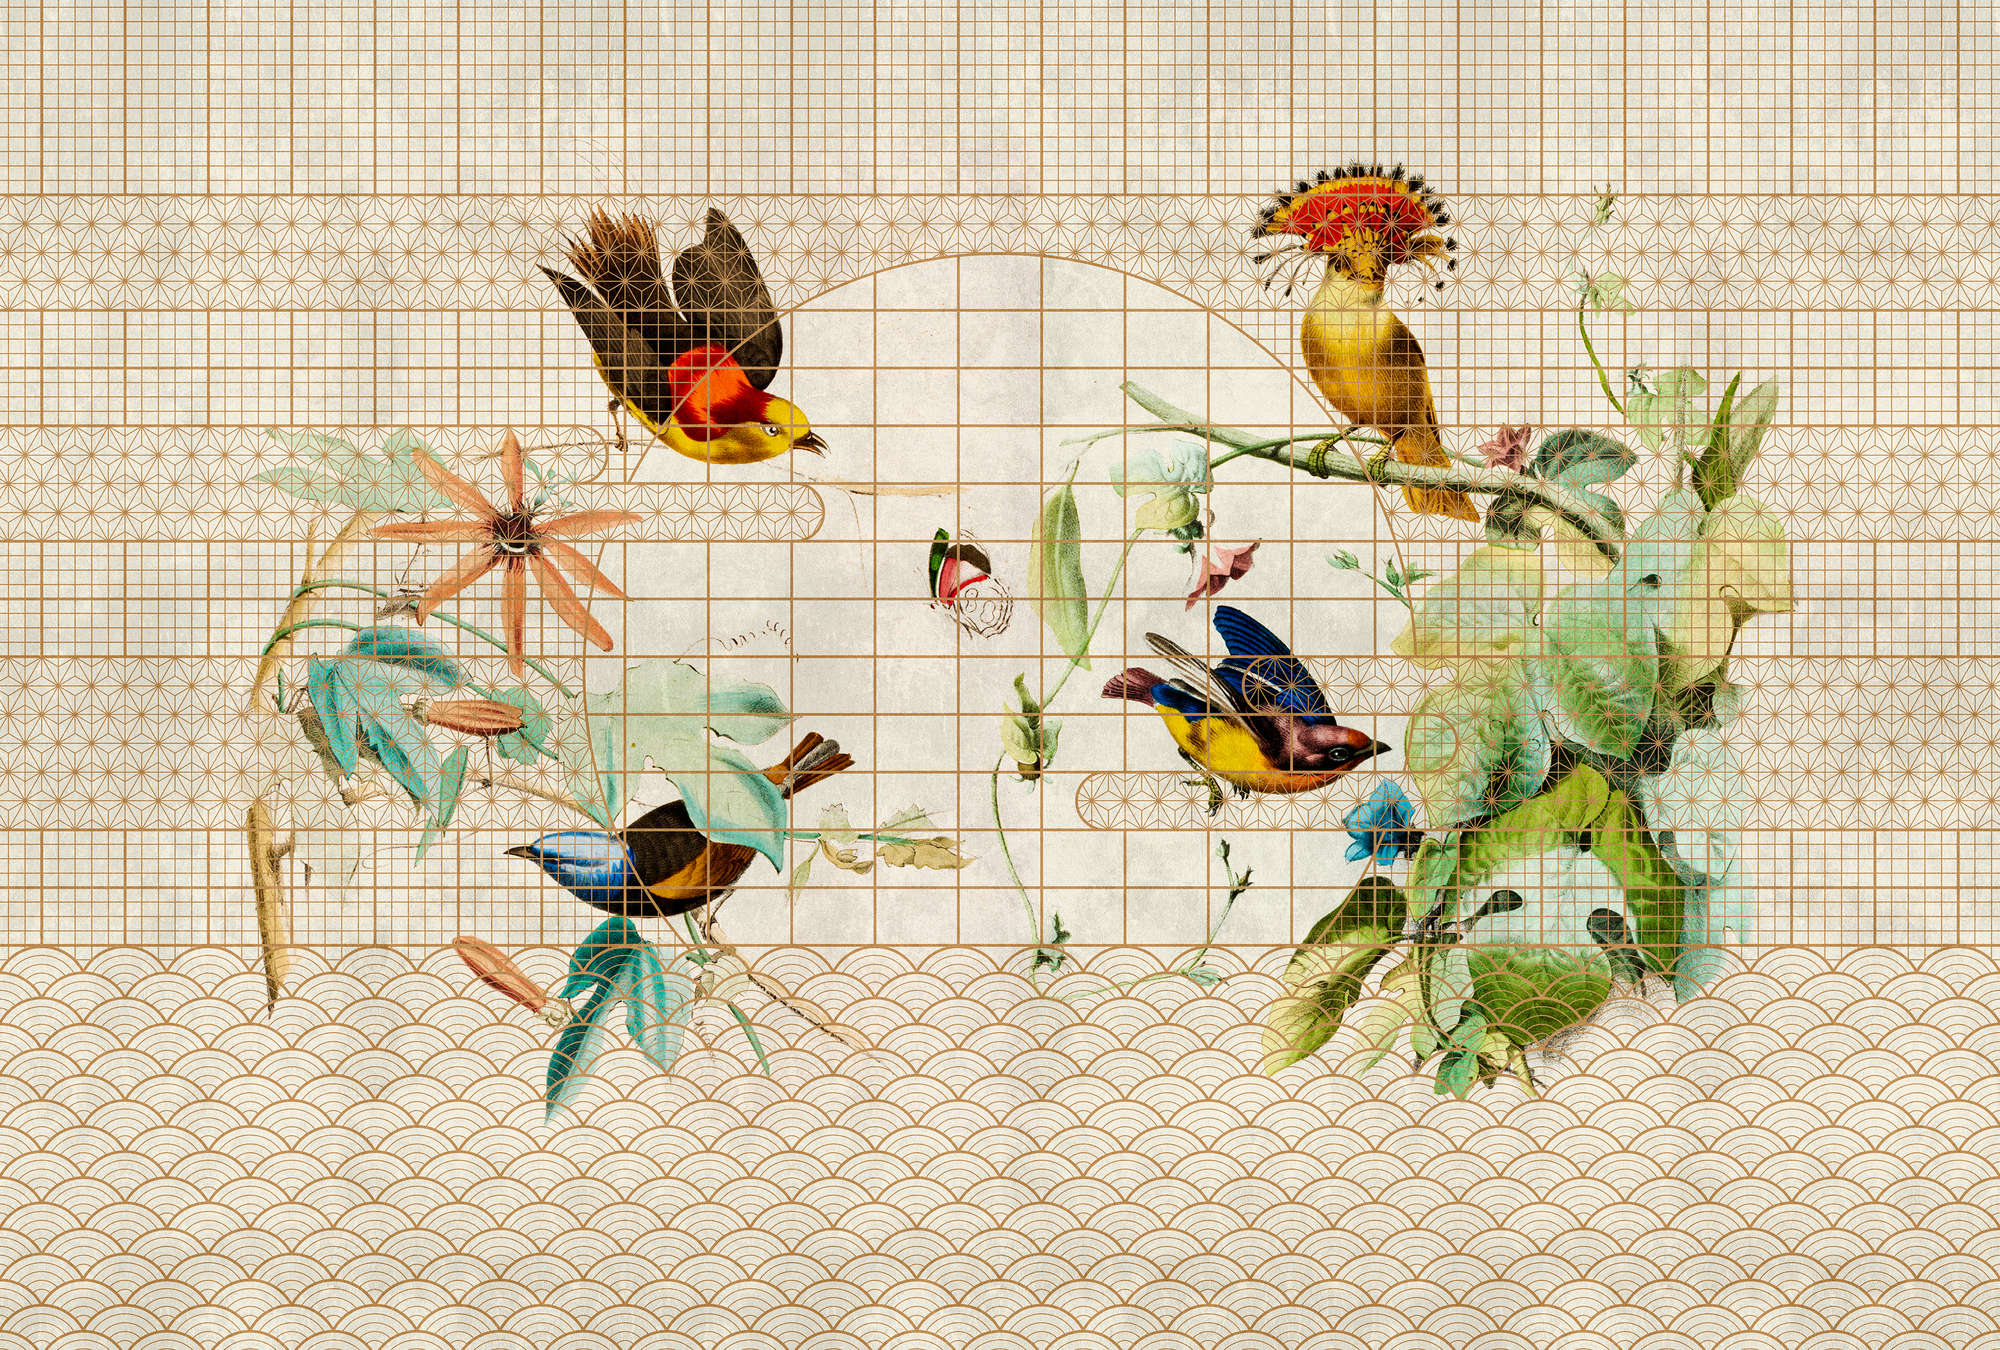             Volière 1 - Papier peint oiseaux & papillons dans une volière dorée
        